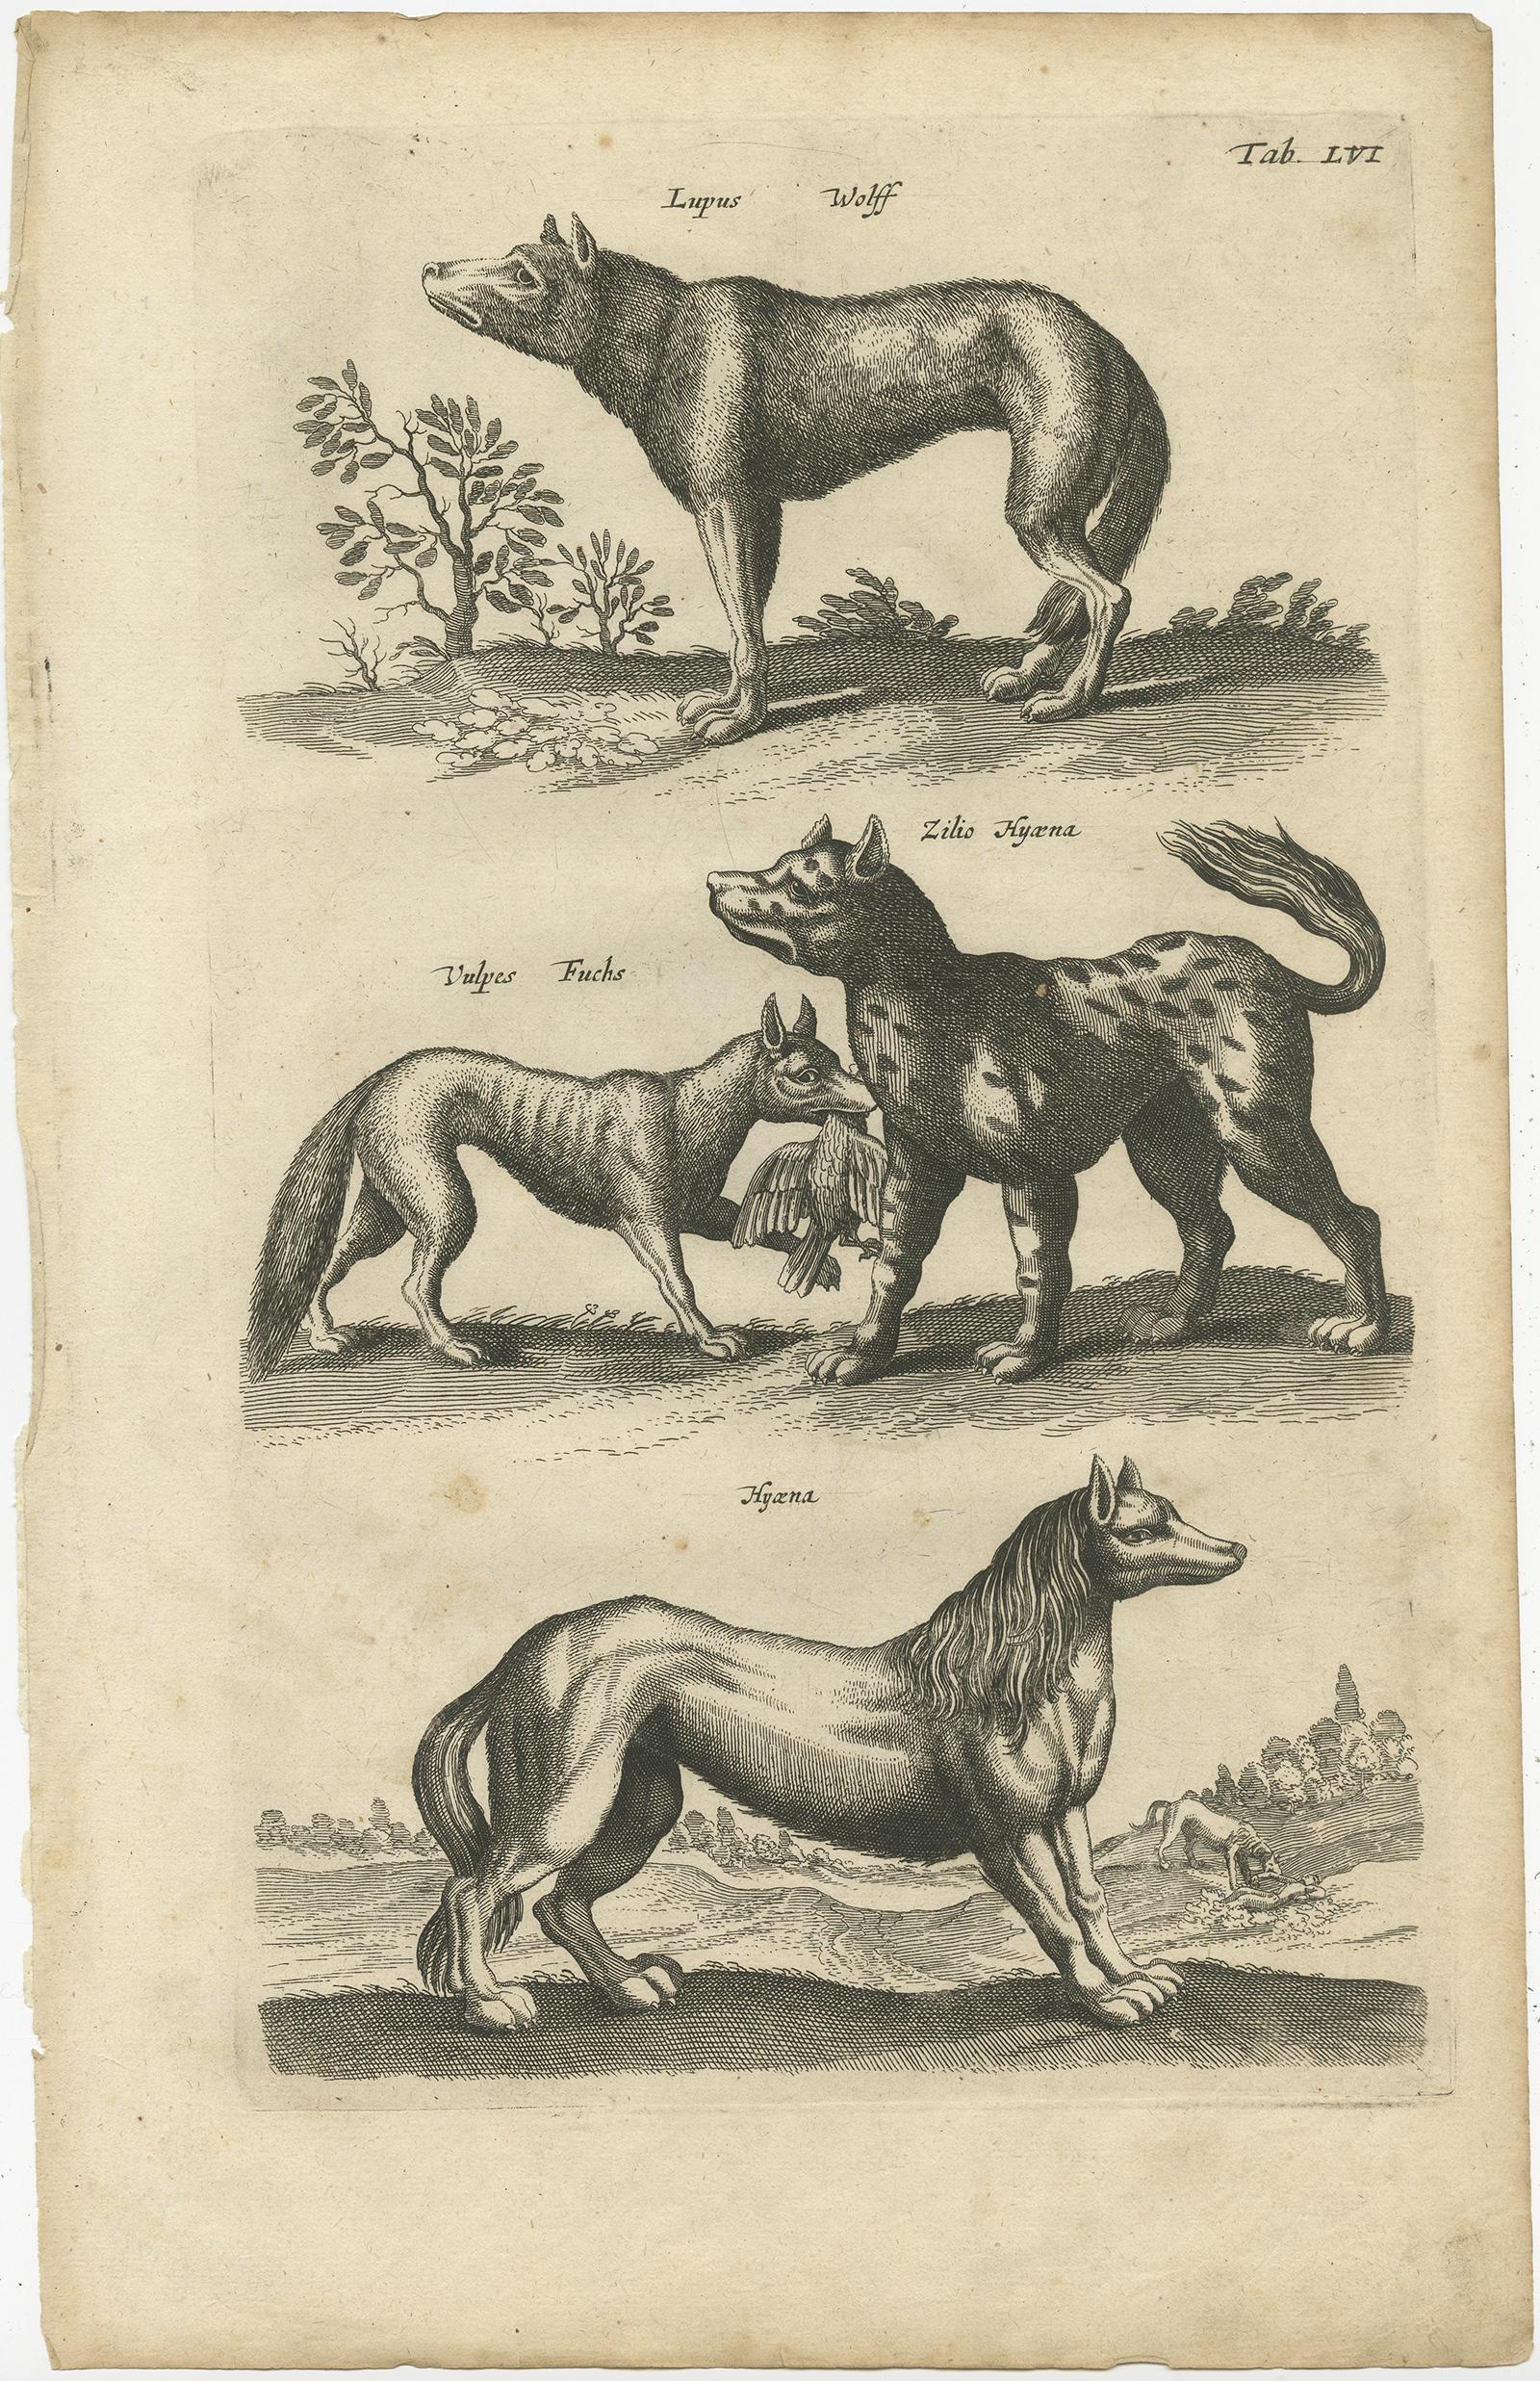 Gravure ancienne de divers animaux : Lupus, Wolff (loup) - Vulpes, Fuchs (renard) - Zilio Hyaena (hyène). Cette gravure provient de 